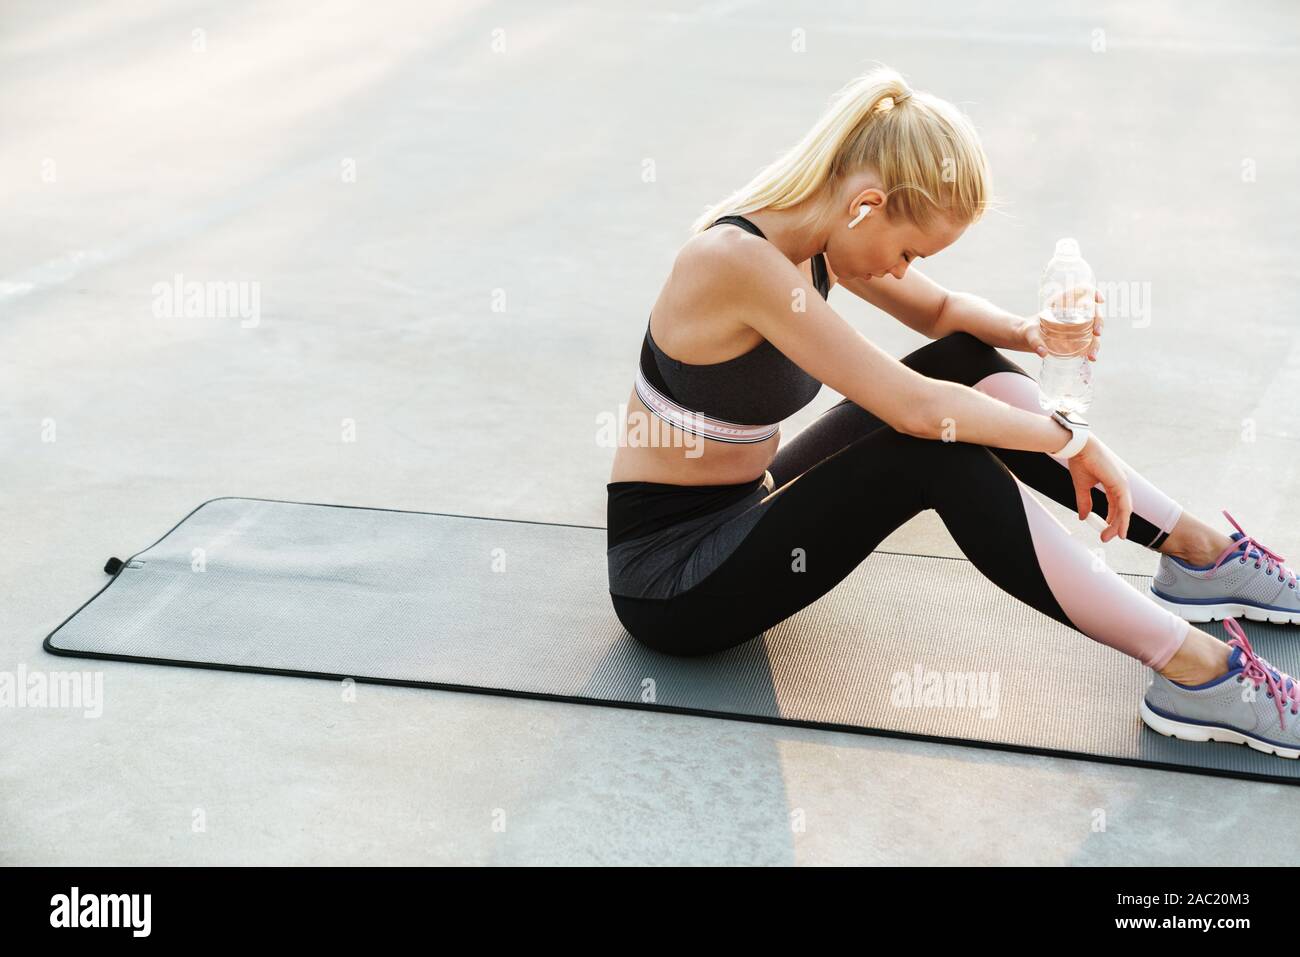 Bild des athletischen Sportlerin im Trainingsanzug Trinkwasser während des Trainings auf Fitness Matte im Freien Stockfoto